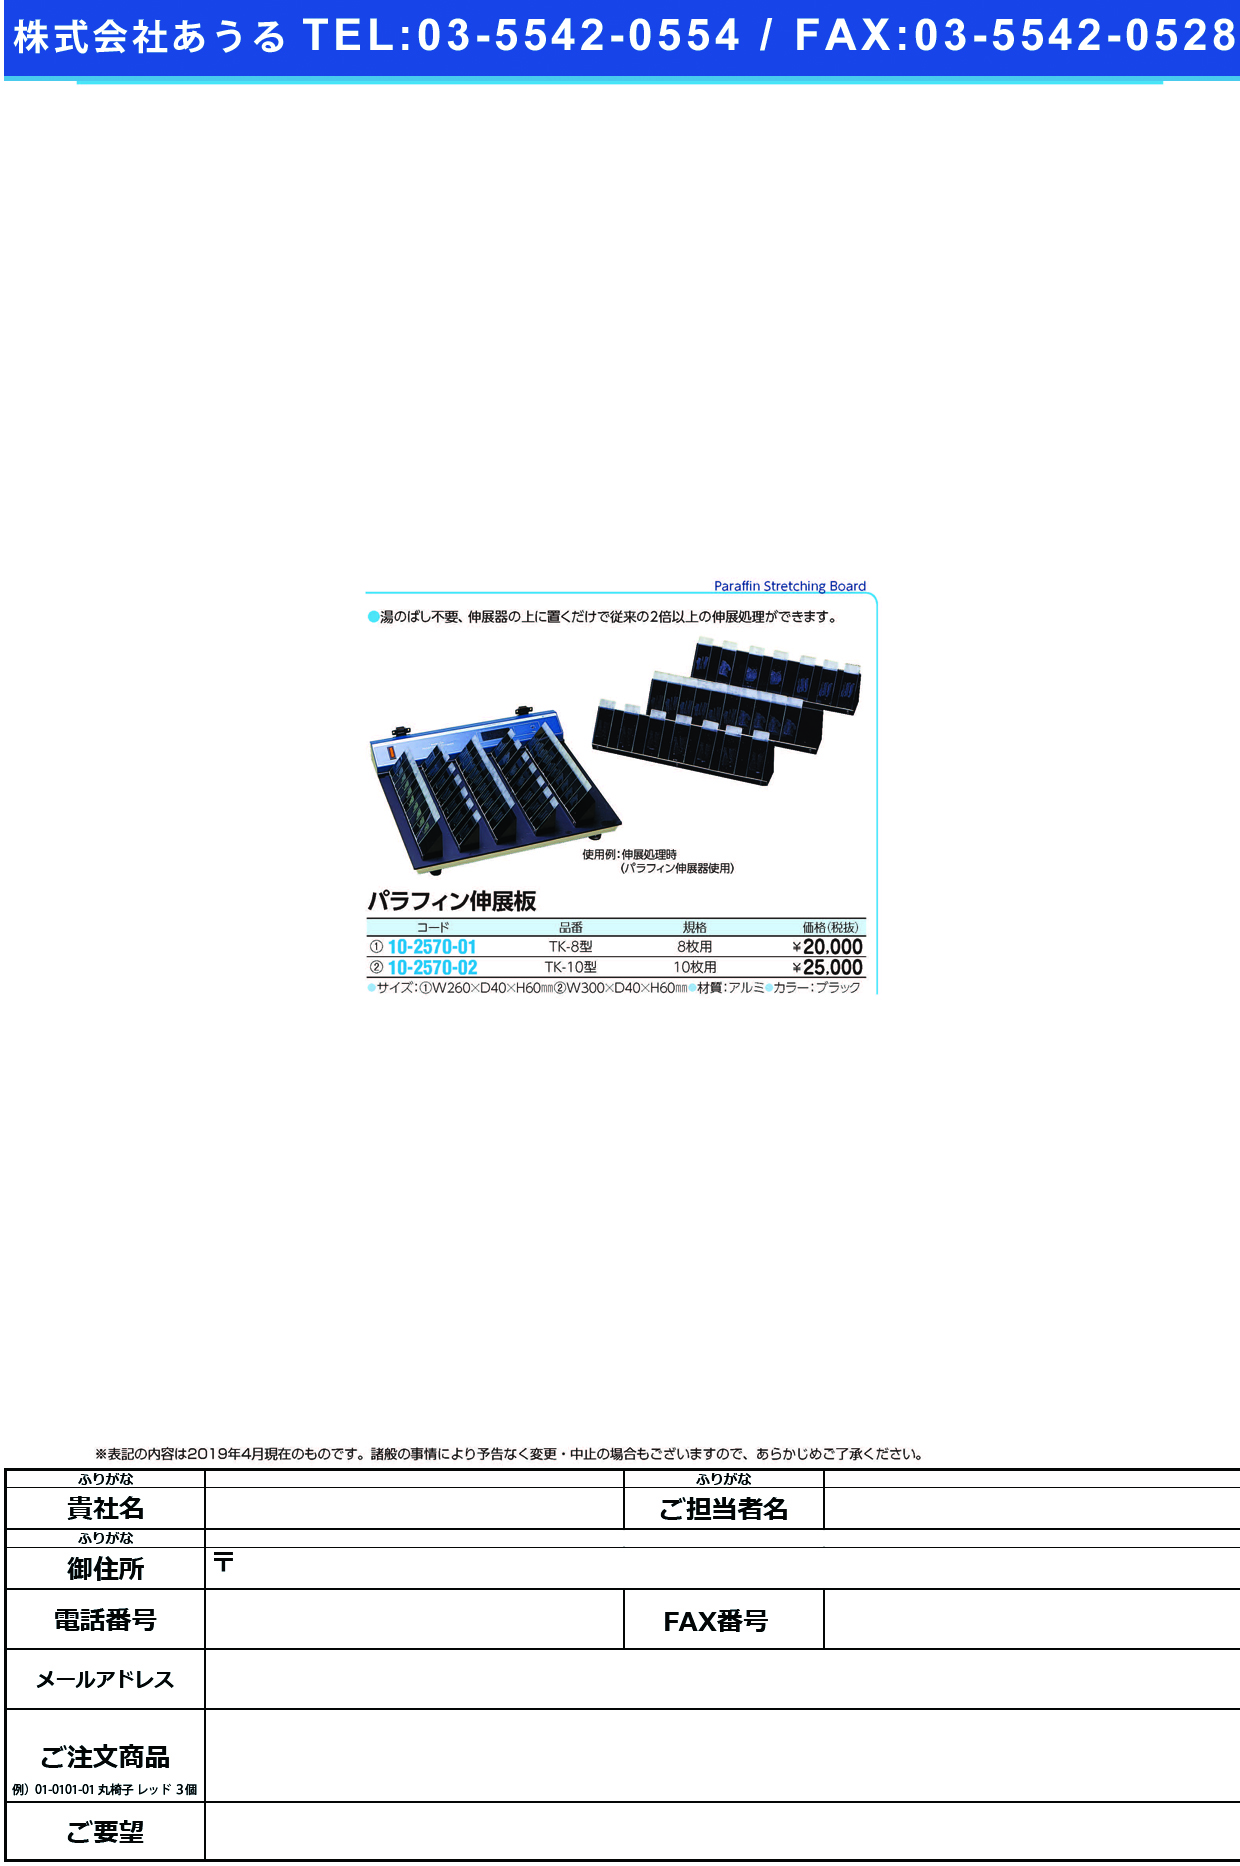 (10-2570-02)パラフィン伸展板（１０枚用） TK-10(300X40X60MM) ﾊﾟﾗﾌｨﾝｼﾝﾃﾝﾊﾞﾝ ブラック【1個単位】【2019年カタログ商品】